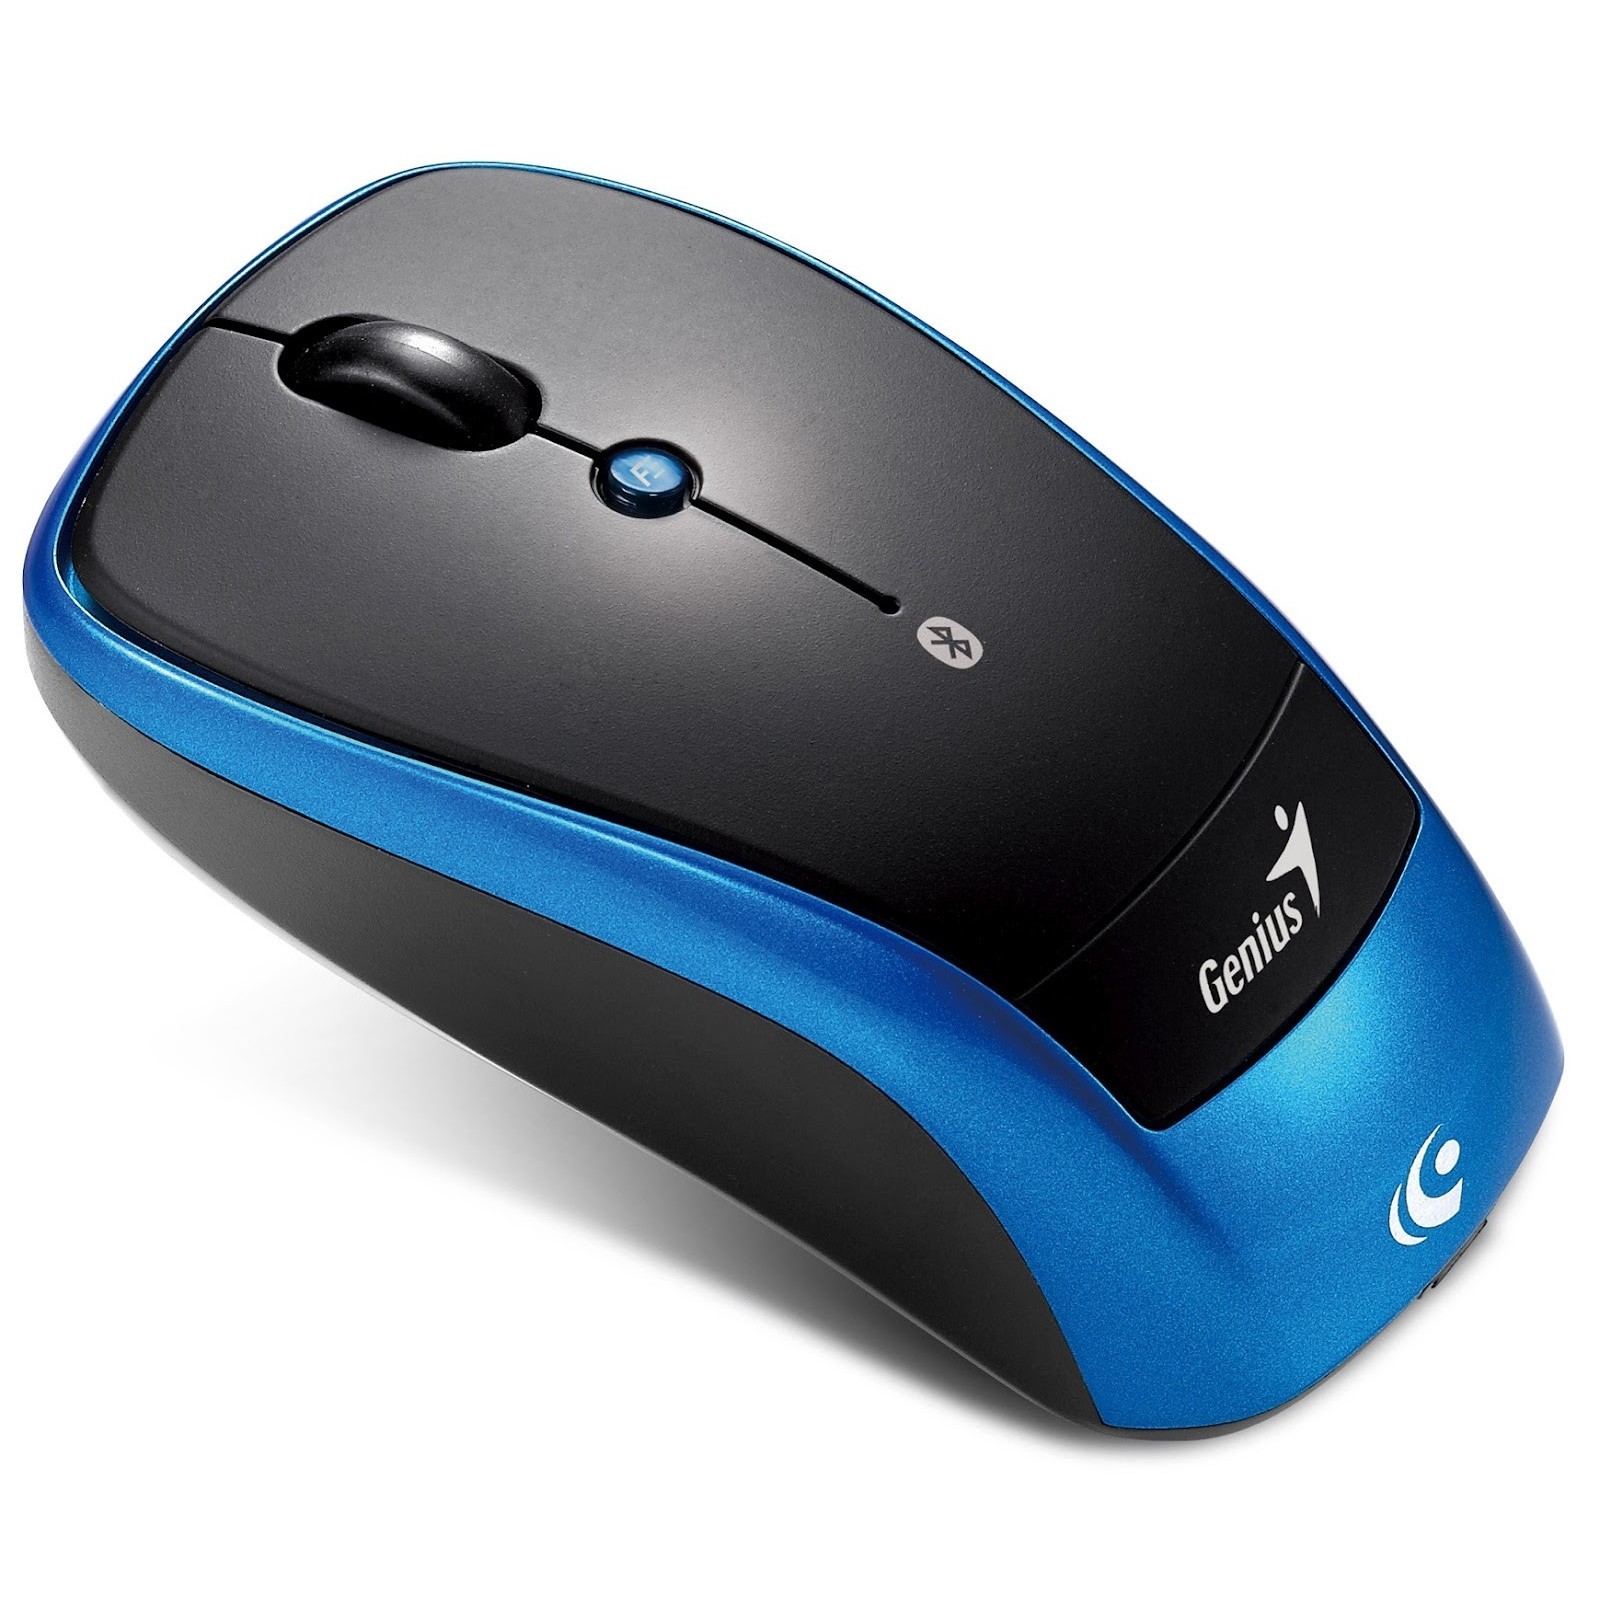 Внутренняя мышь. Мышка Джениус. Genius Bluetooth Mouse. Мышь компьютера. Компьютерный манипулятор мышь.